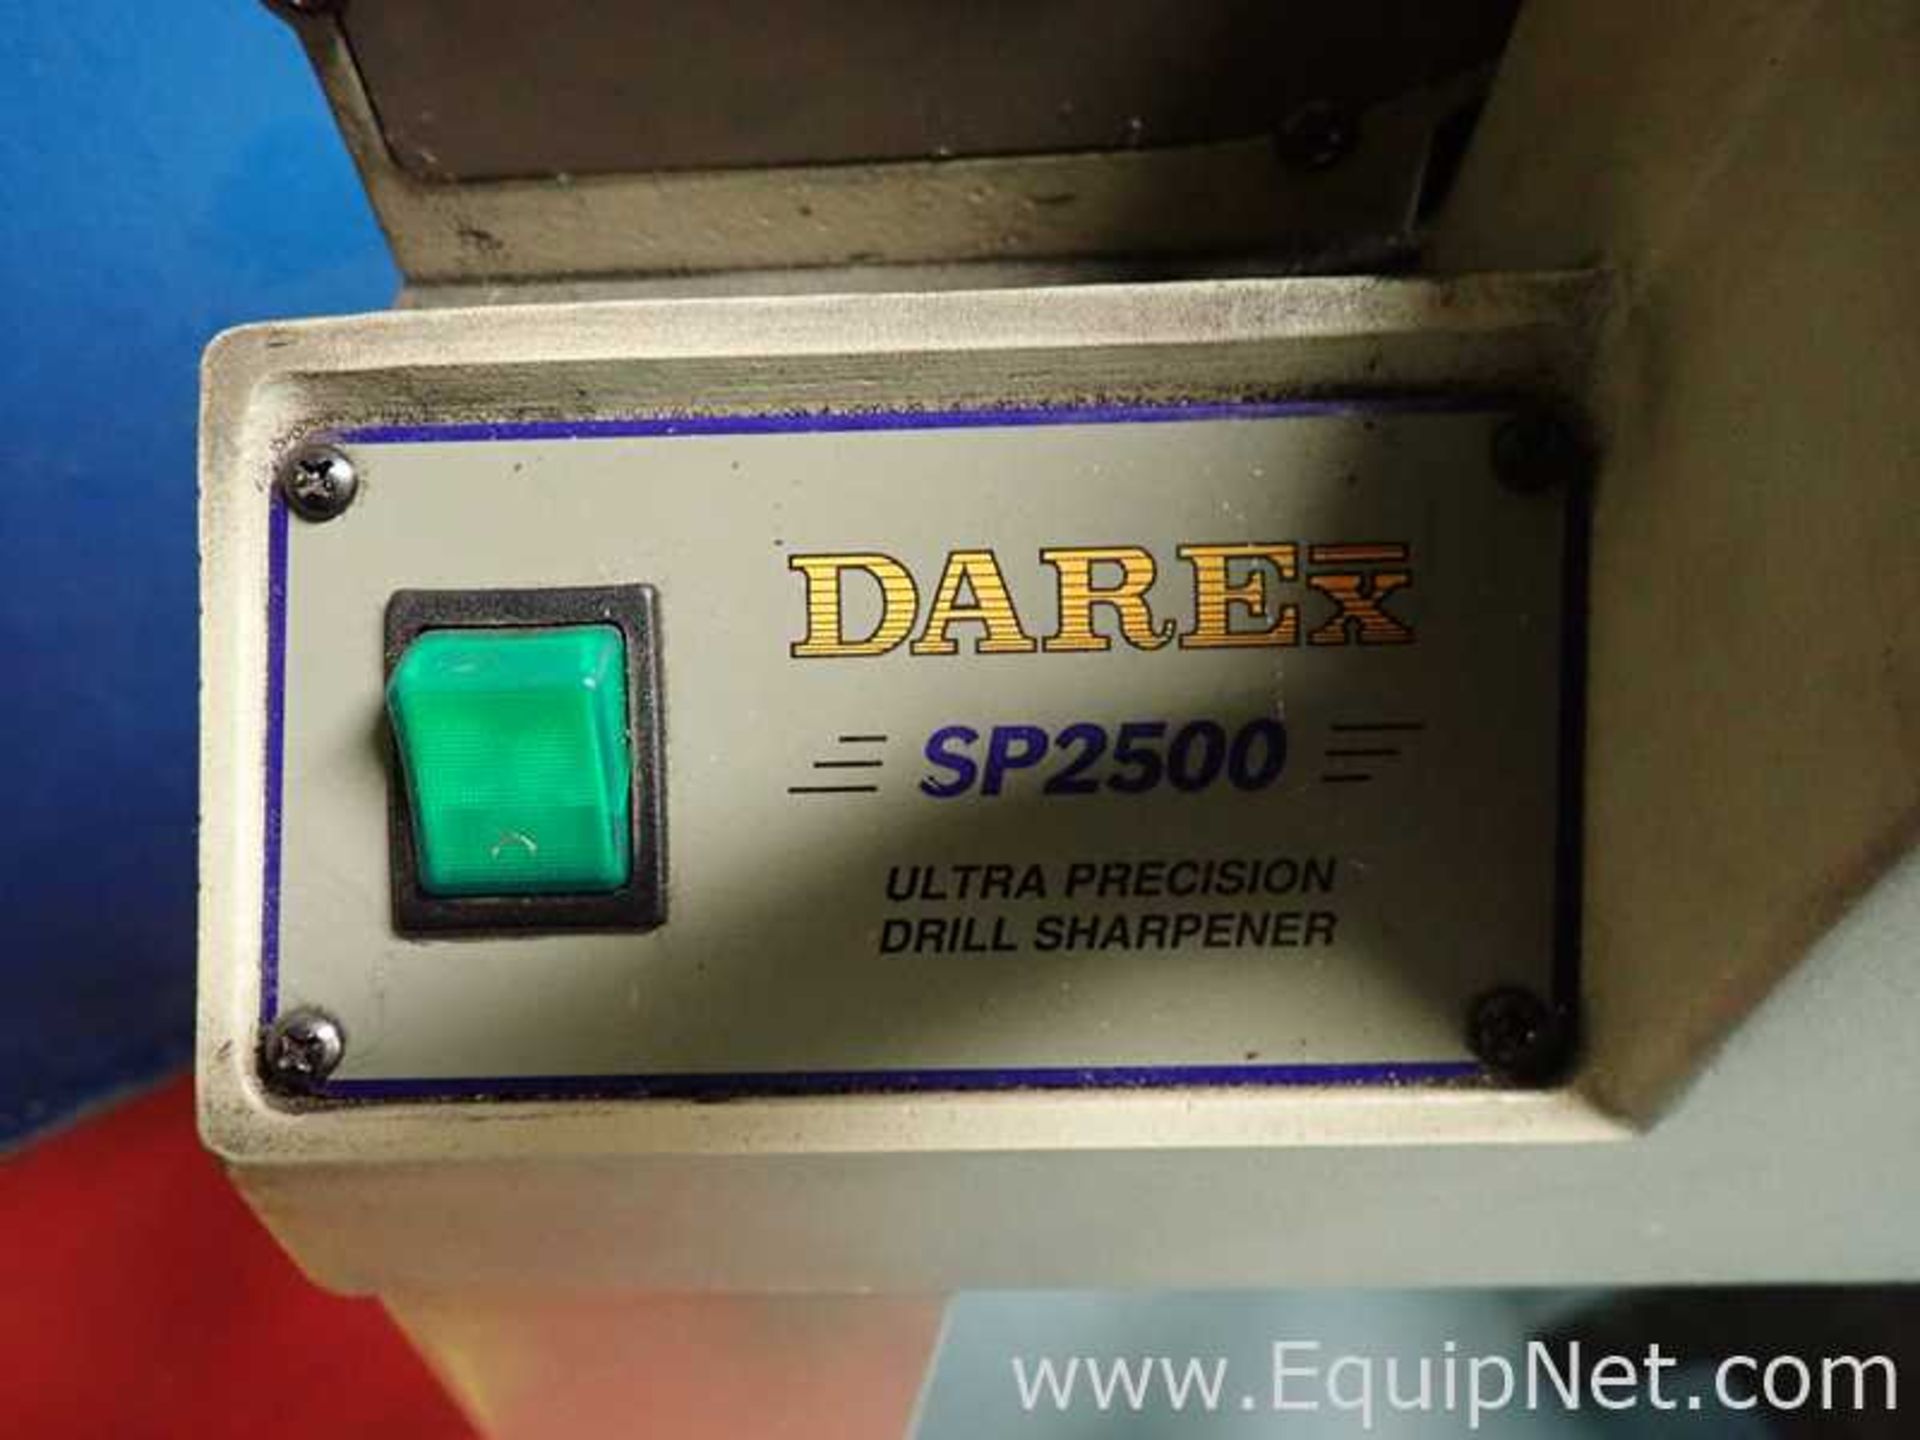 Darex SP2500 Ultra Precision Drill Sharpener - Image 2 of 5